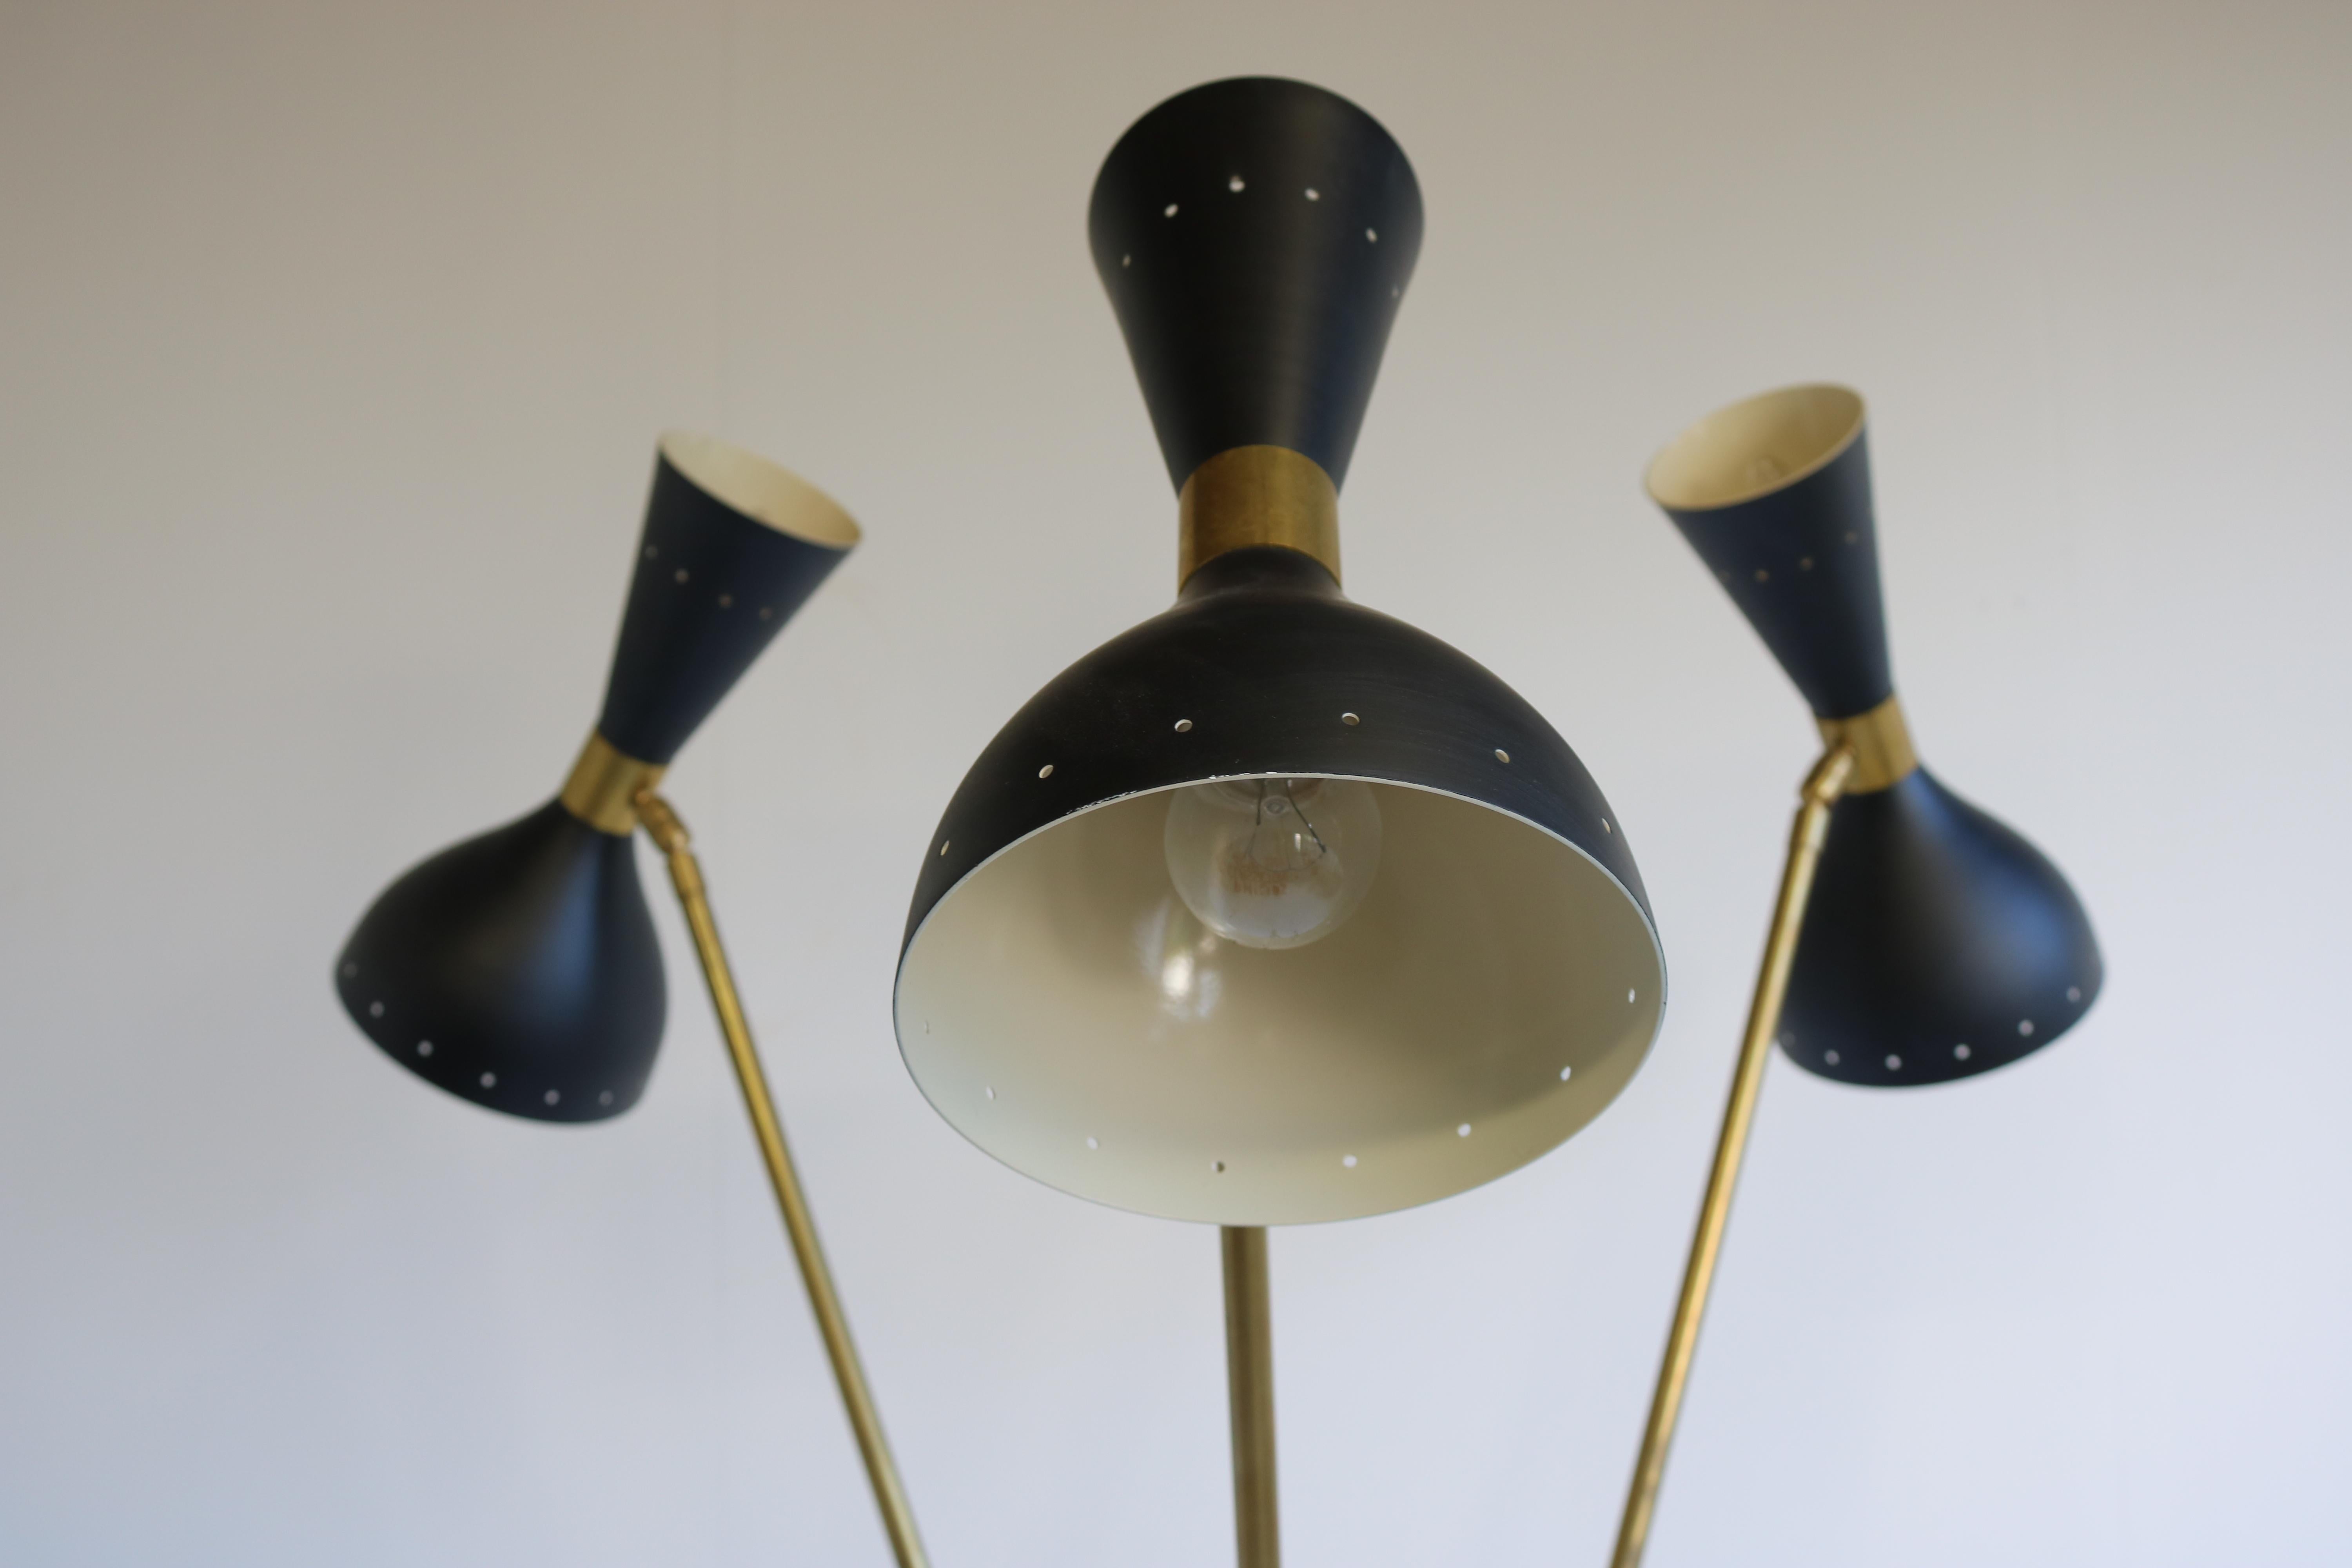 Mid-20th Century 1 of 2 Italian Minimalist Design Floor Lamp Brass Midcentury Stilnovo Style 50s For Sale